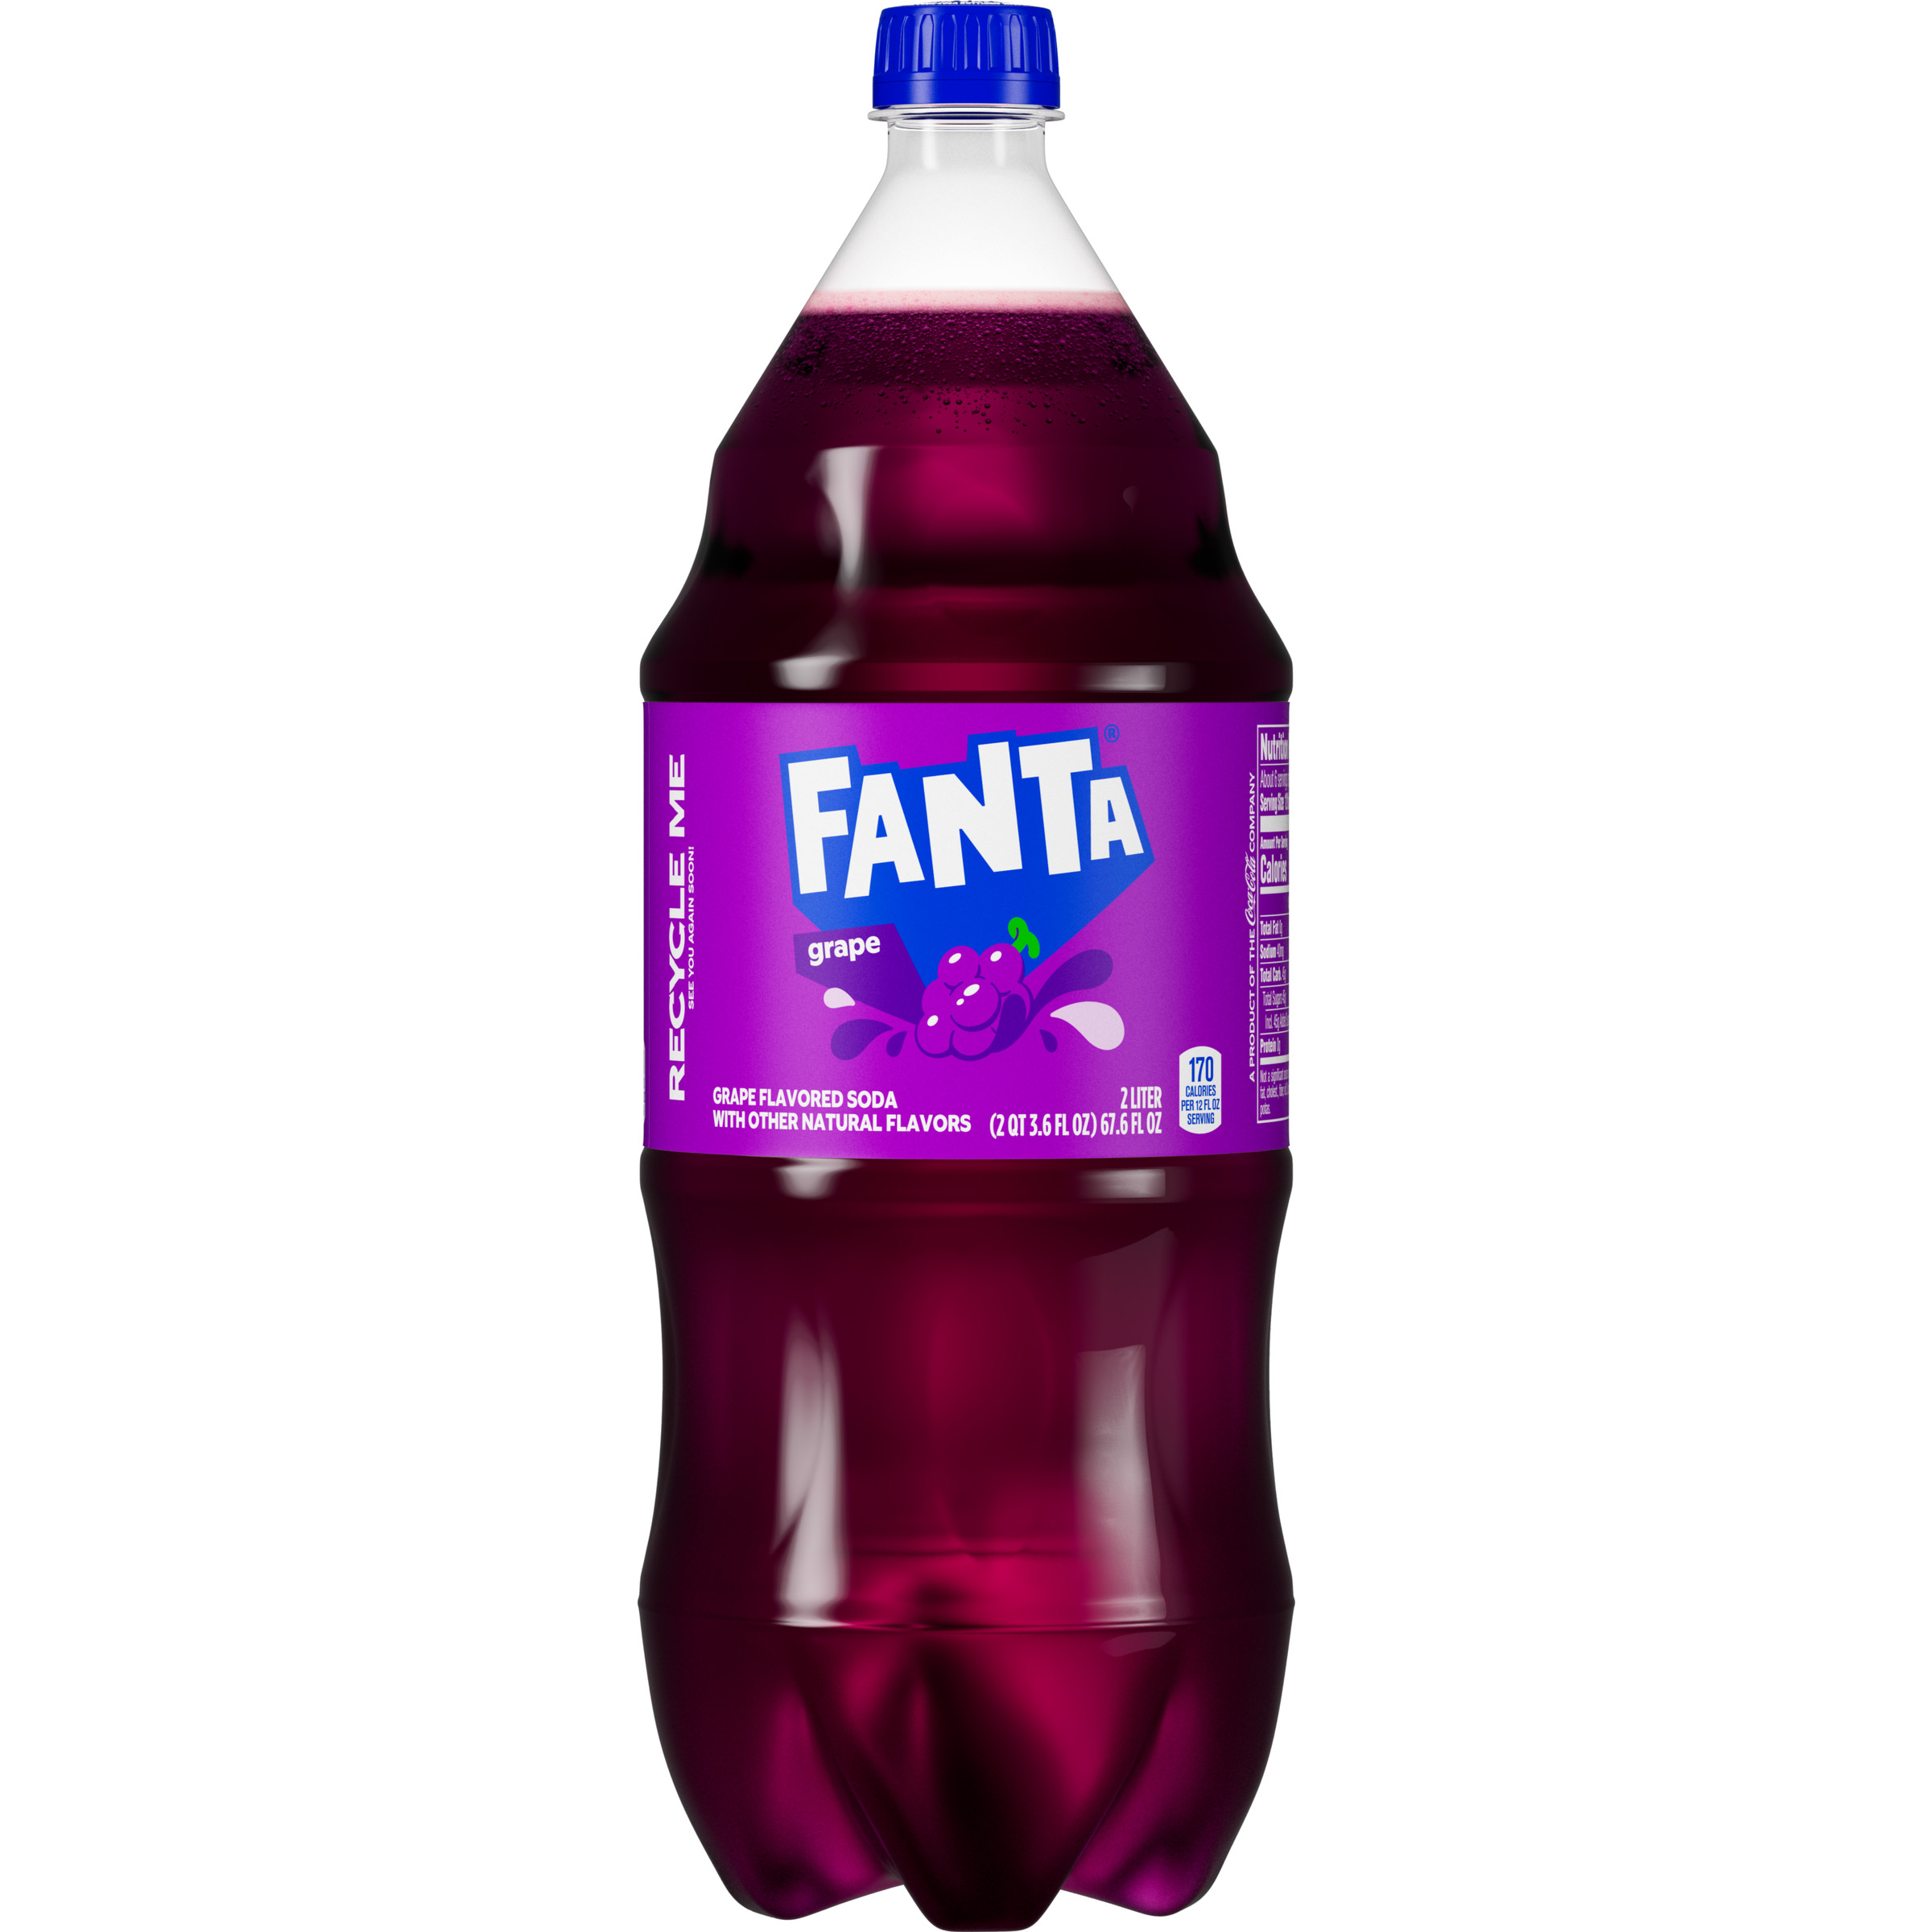 Fanta Grape - Erfrischend fruchtig von The Coca-Cola Company